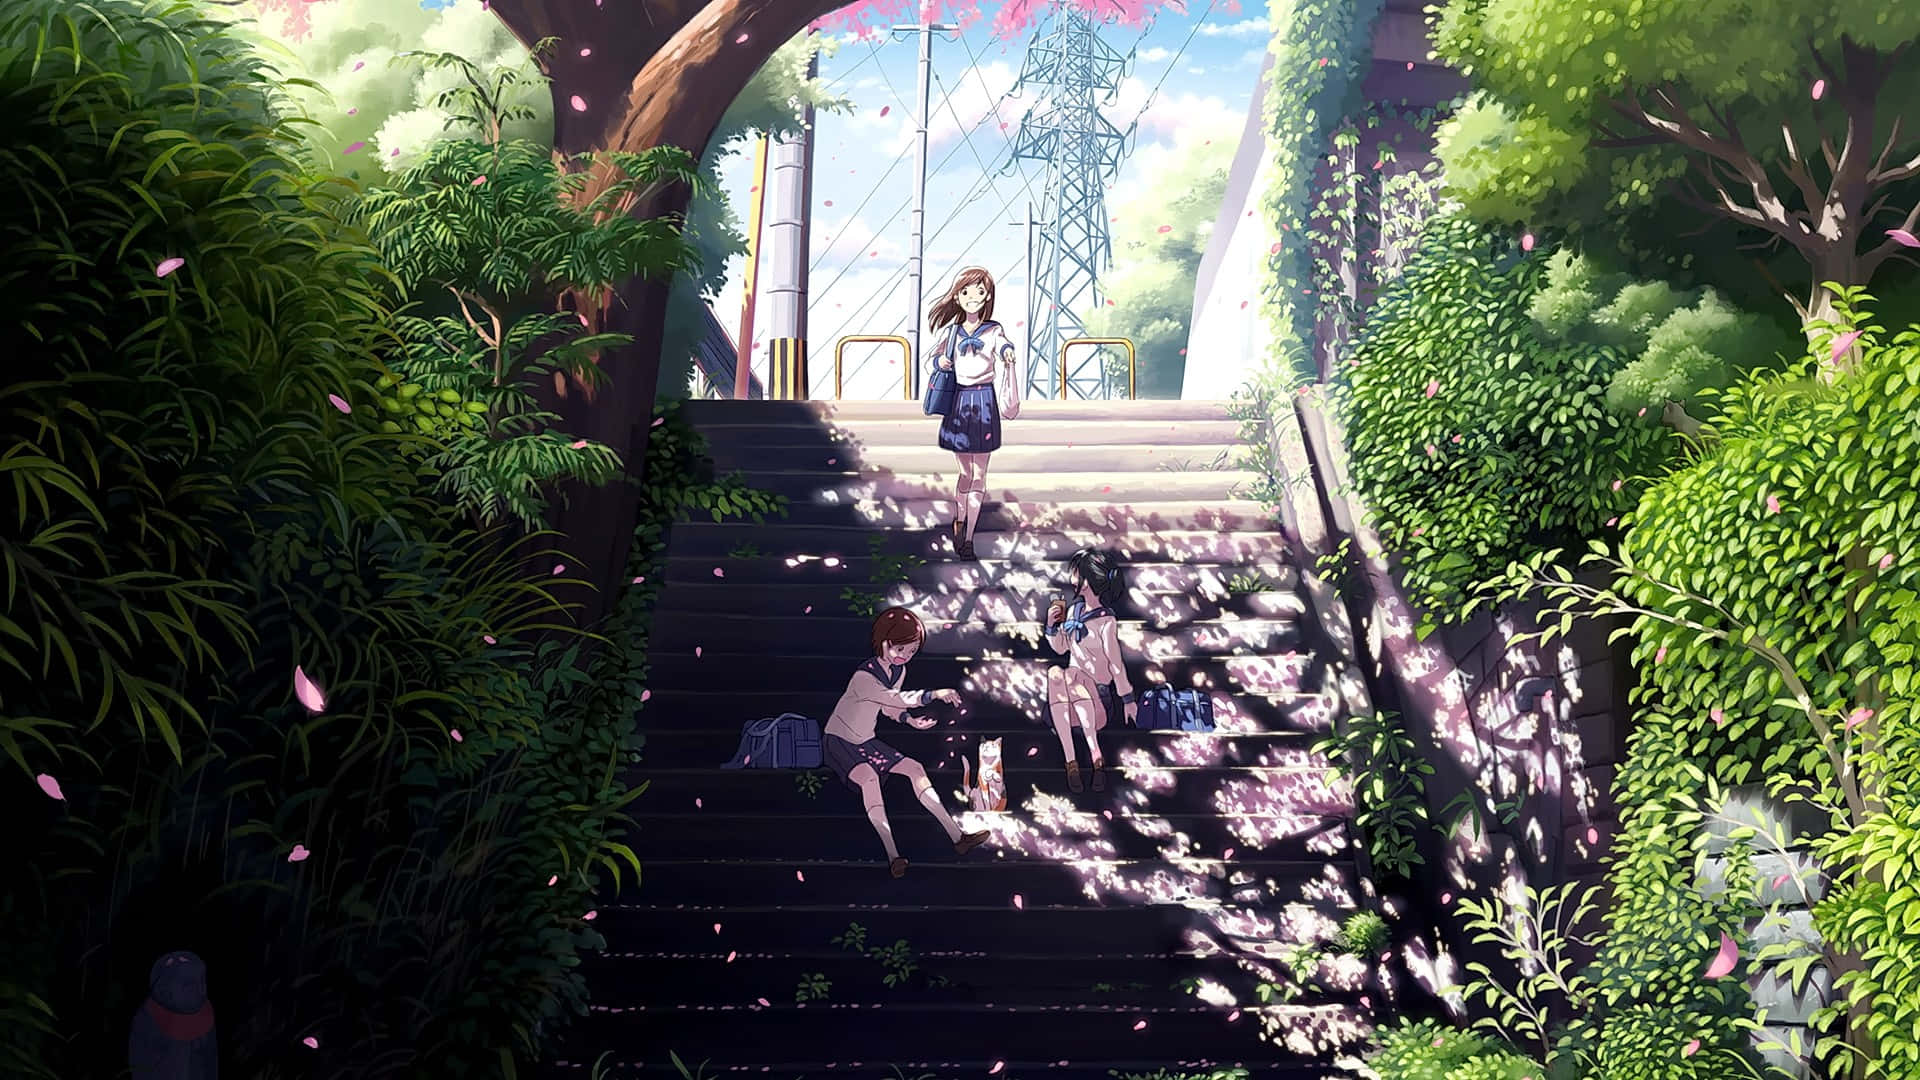 Fondode Pantalla De Chicas De Anime En Un Parque Con Escaleras.